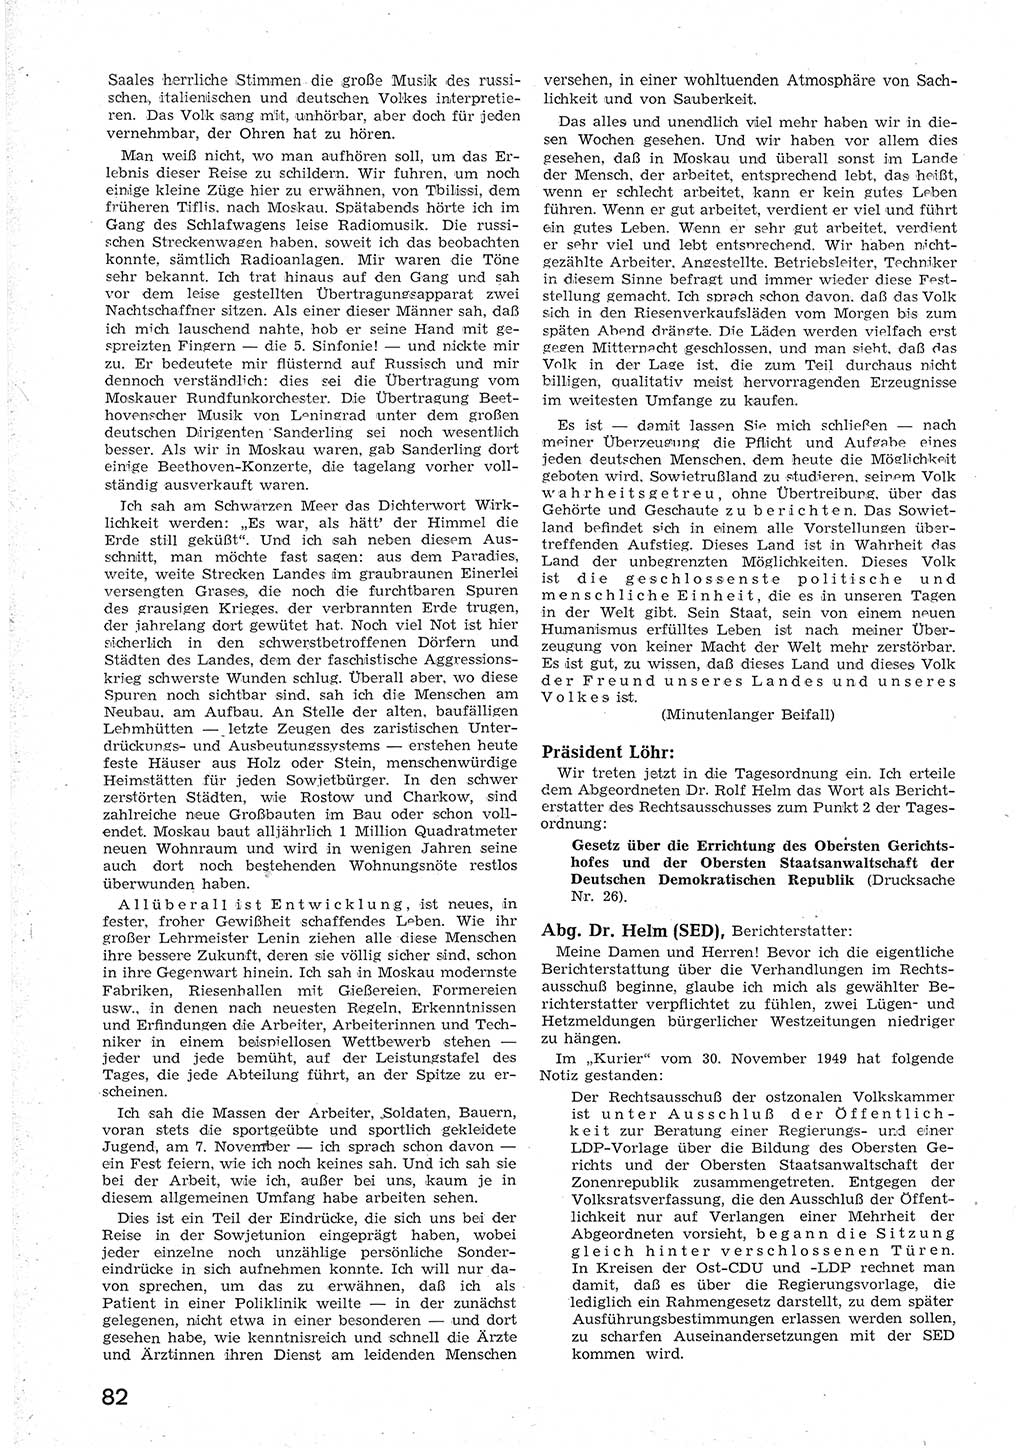 Provisorische Volkskammer (VK) der Deutschen Demokratischen Republik (DDR) 1949-1950, Dokument 94 (Prov. VK DDR 1949-1950, Dok. 94)